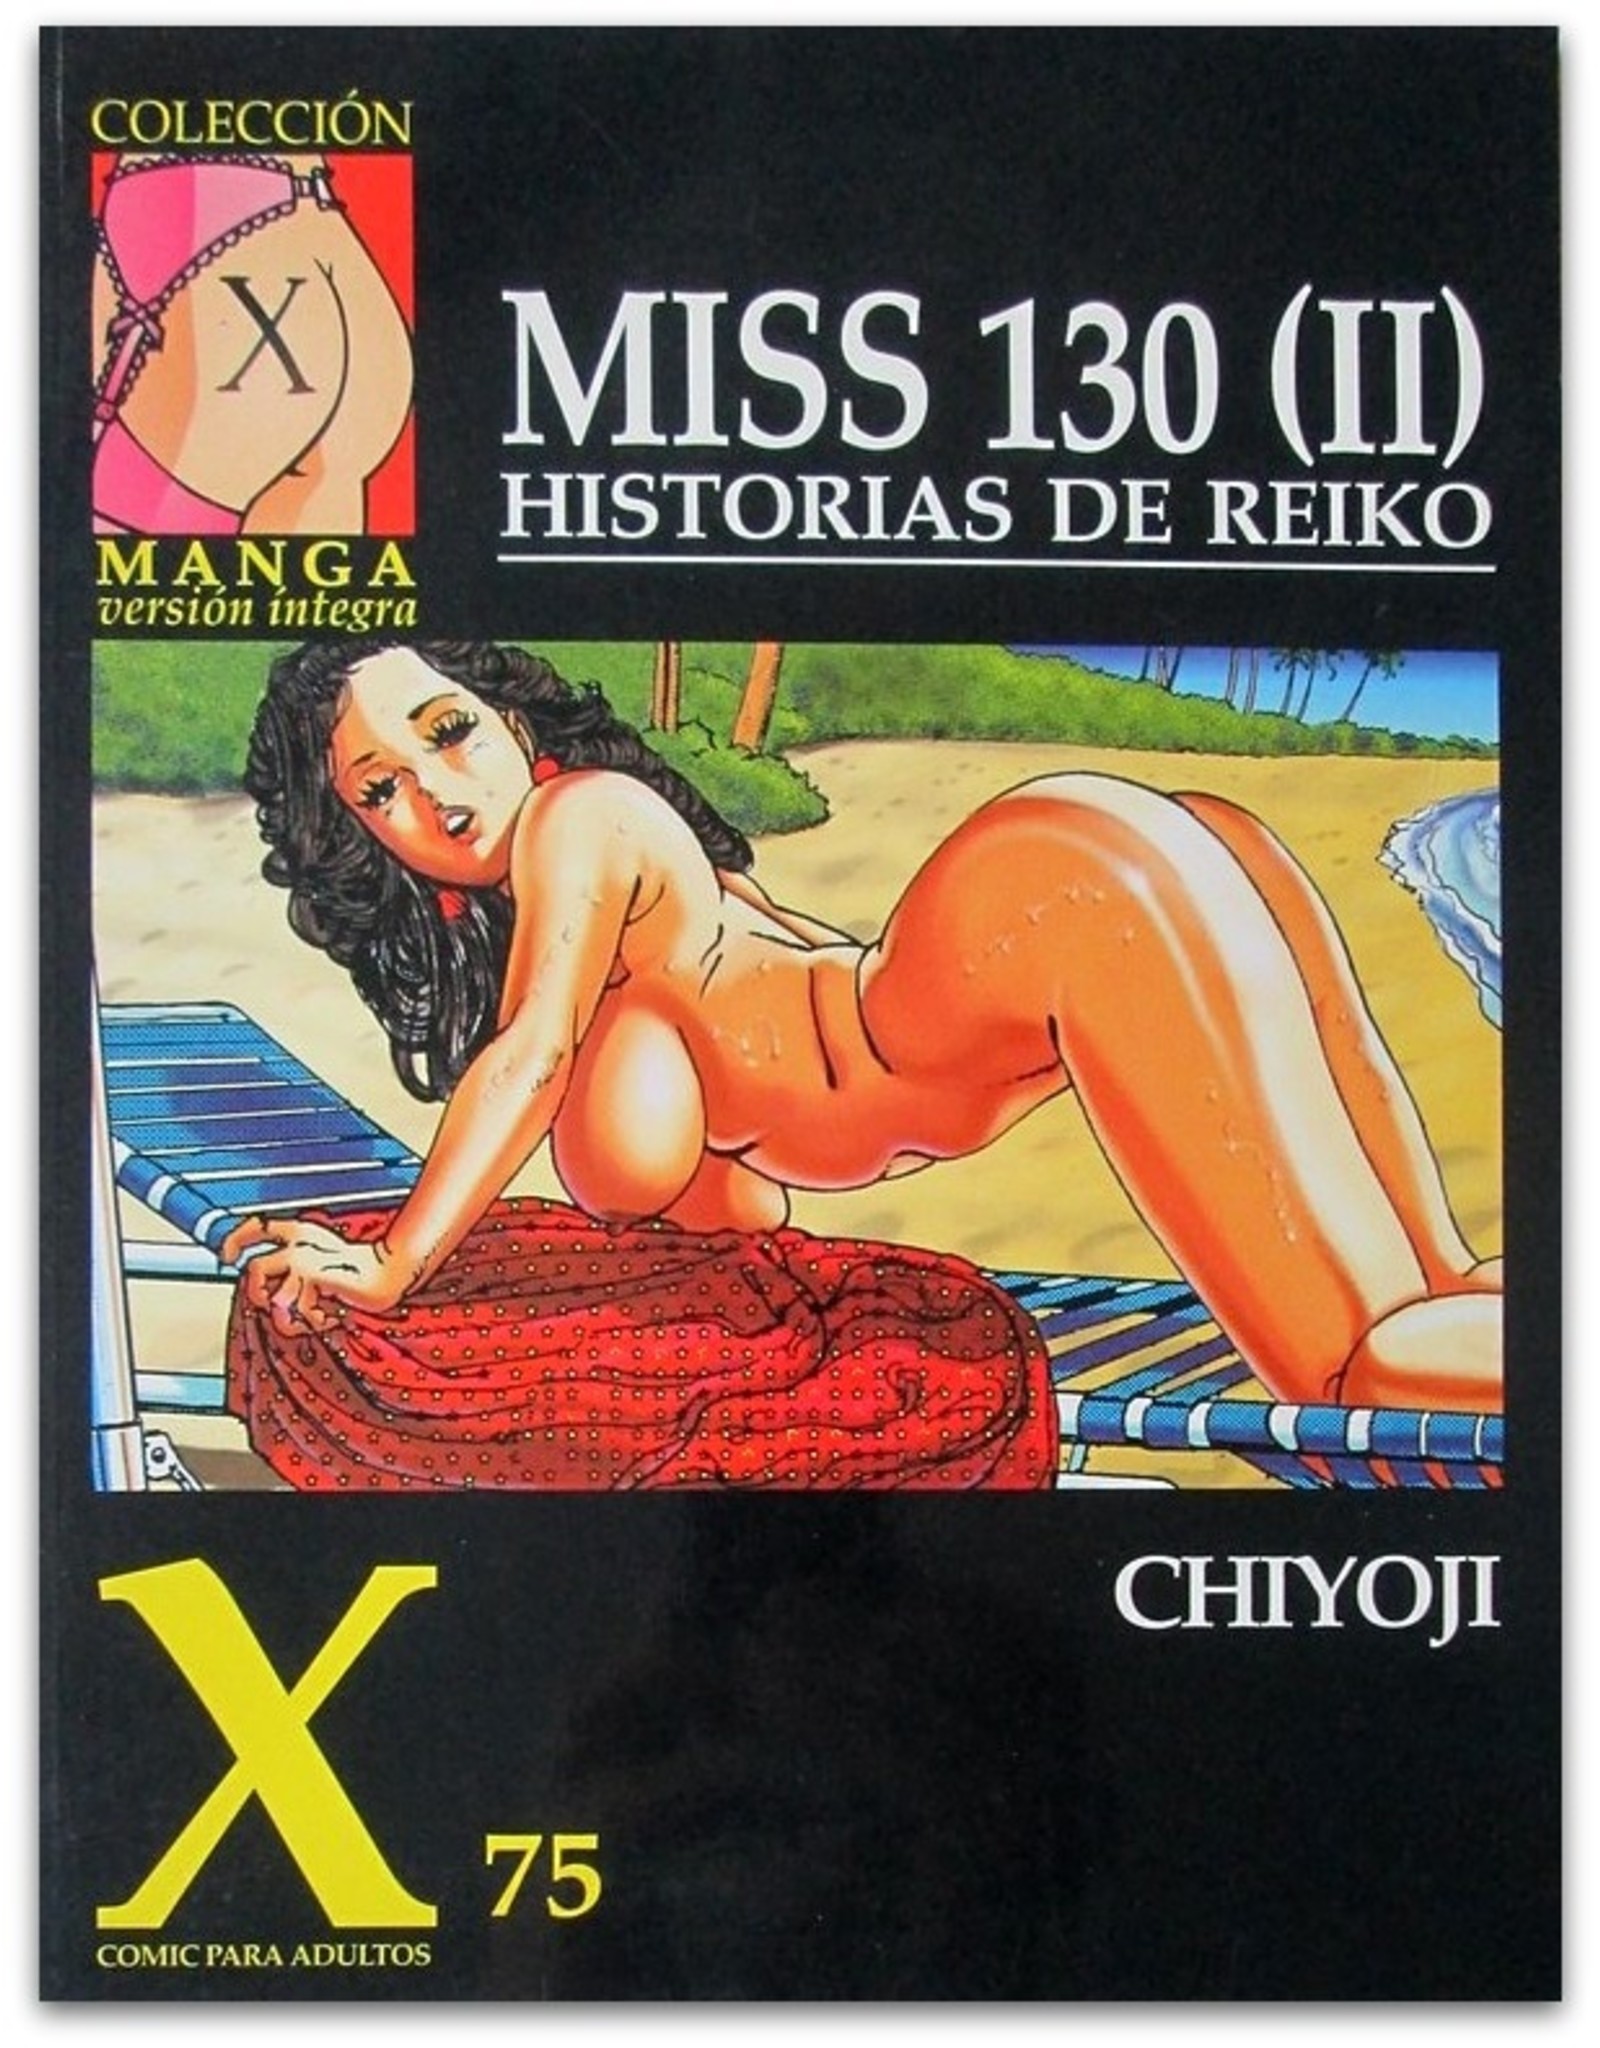 Chiyoji - [Lot met 4 Miss 130 strips]: Collección X Manga version íntegra [X-70; X-75; X-81; X-87]